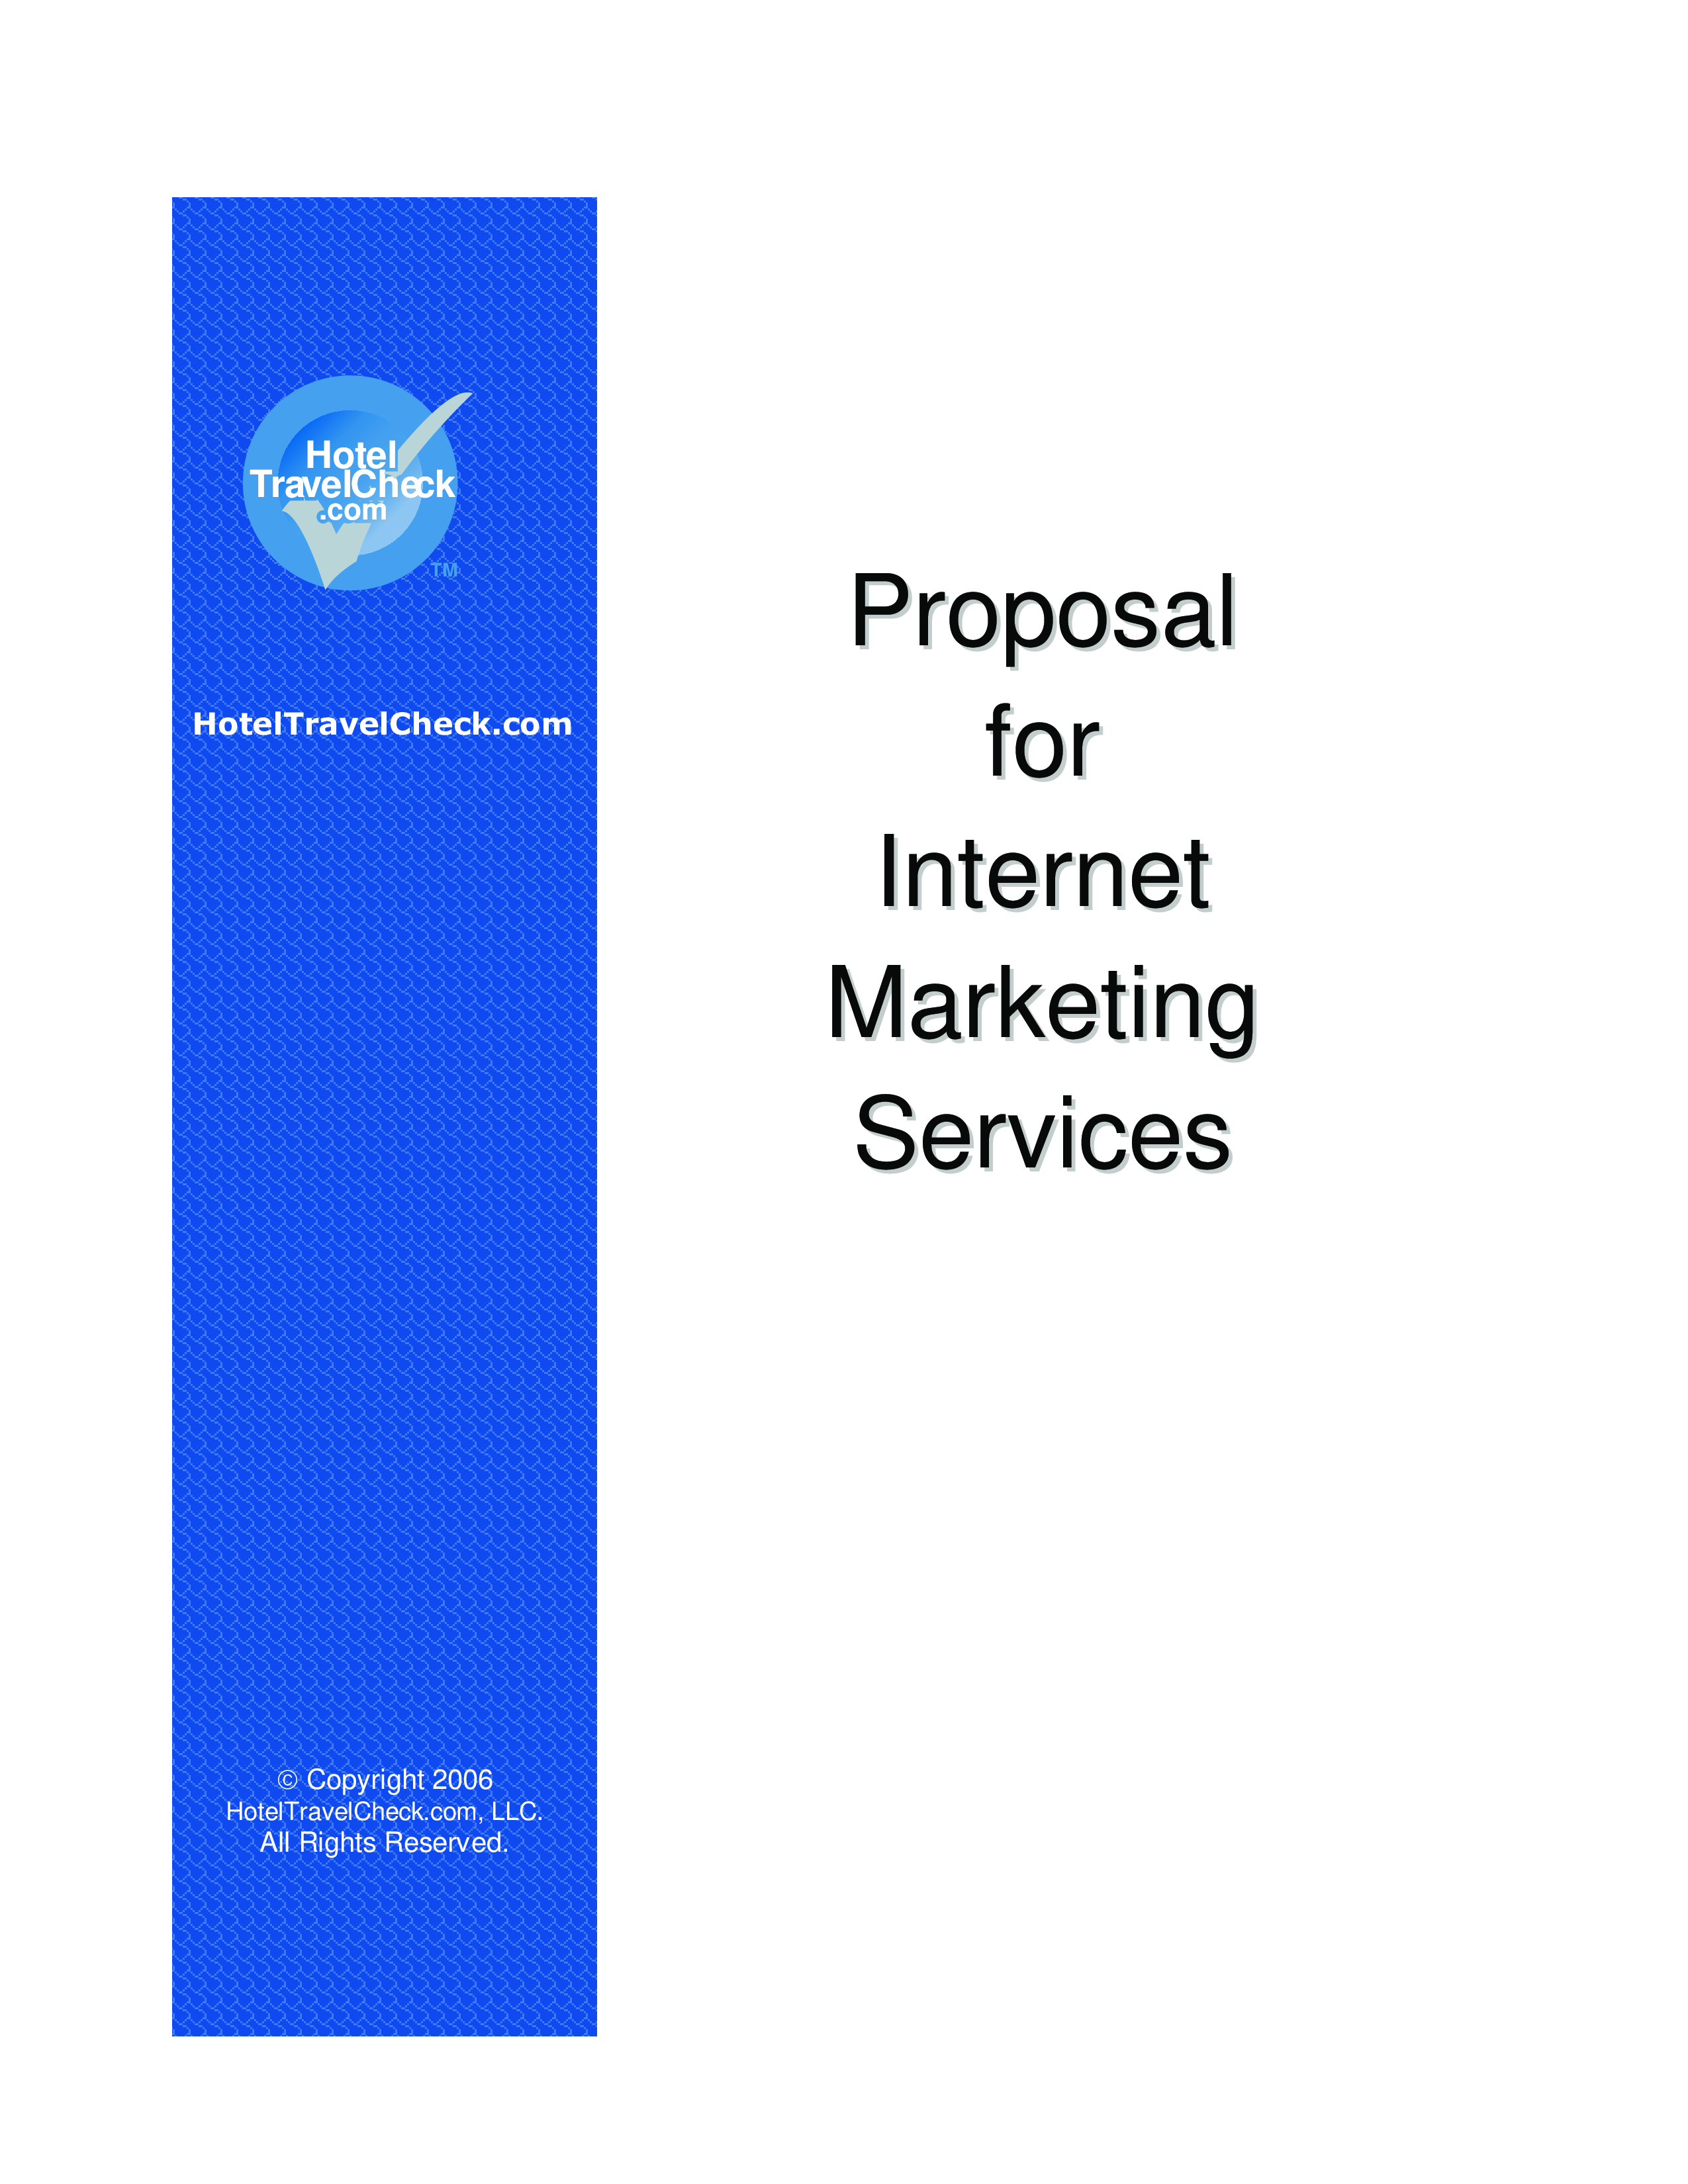 internet marketing proposal plantilla imagen principal